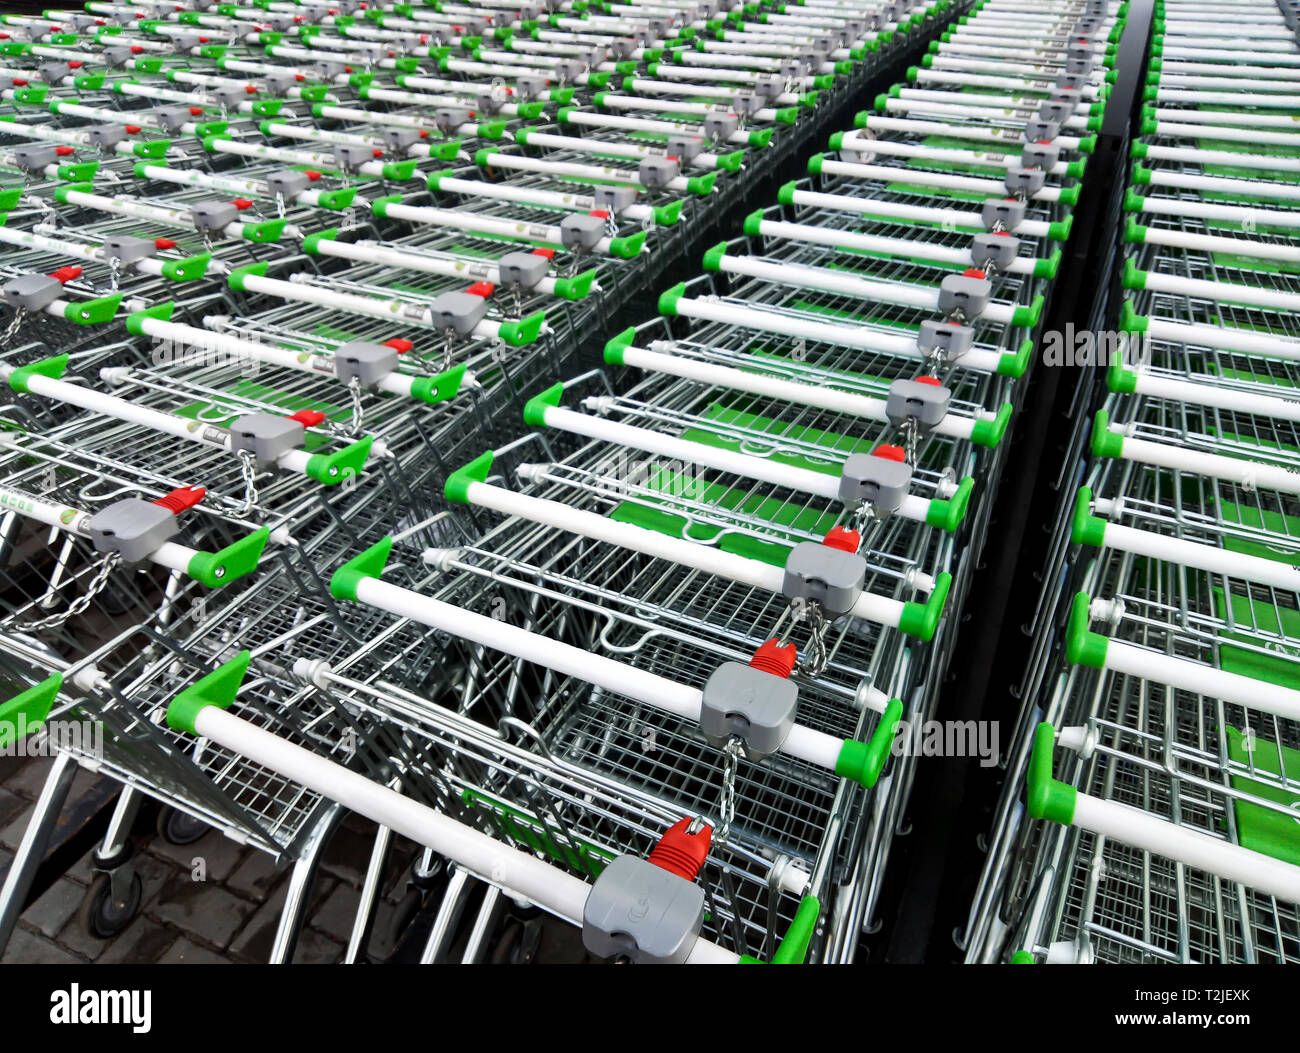 Zeilen von Shopping Carts zu verwenden - in Reihen für die Lagerung in der Nähe von einem Supermarkt oder Hyper Market Stockfoto